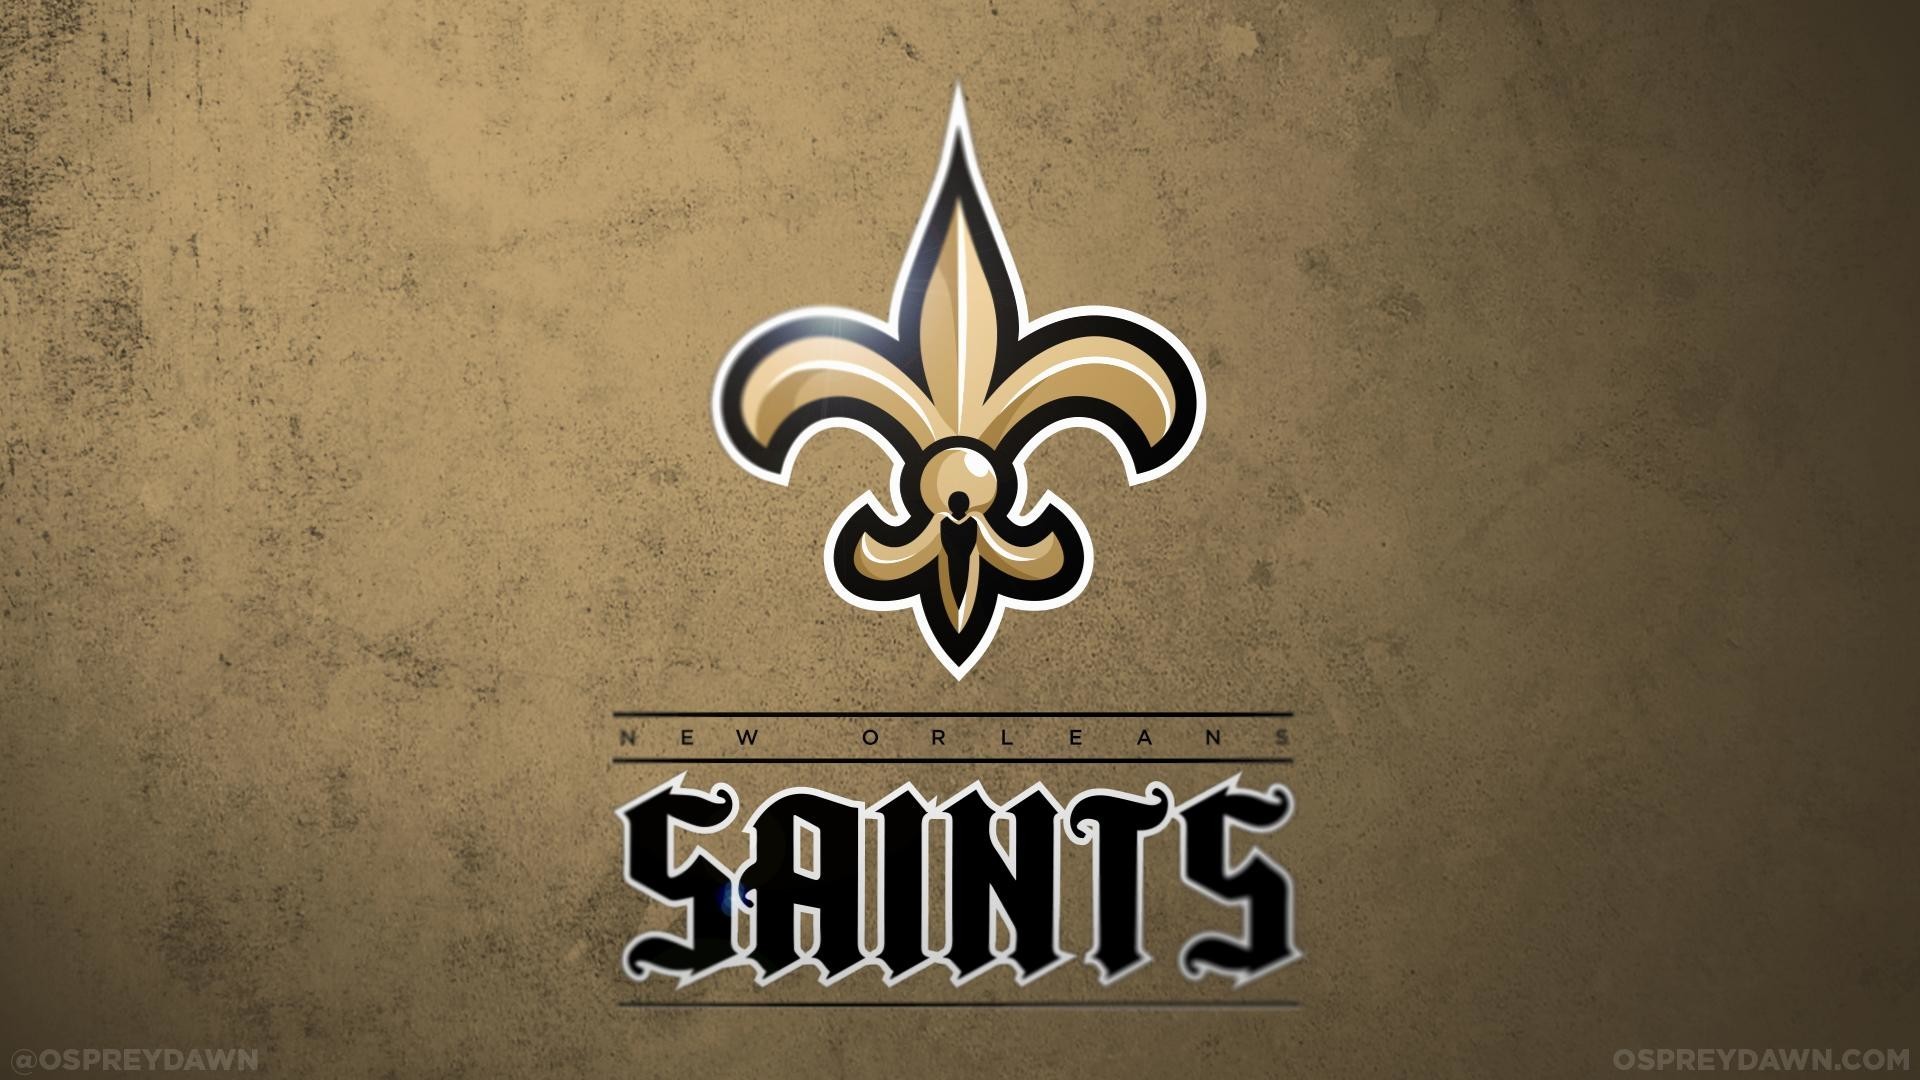 New Orleans Saints NFL - Saints News, Scores, Stats